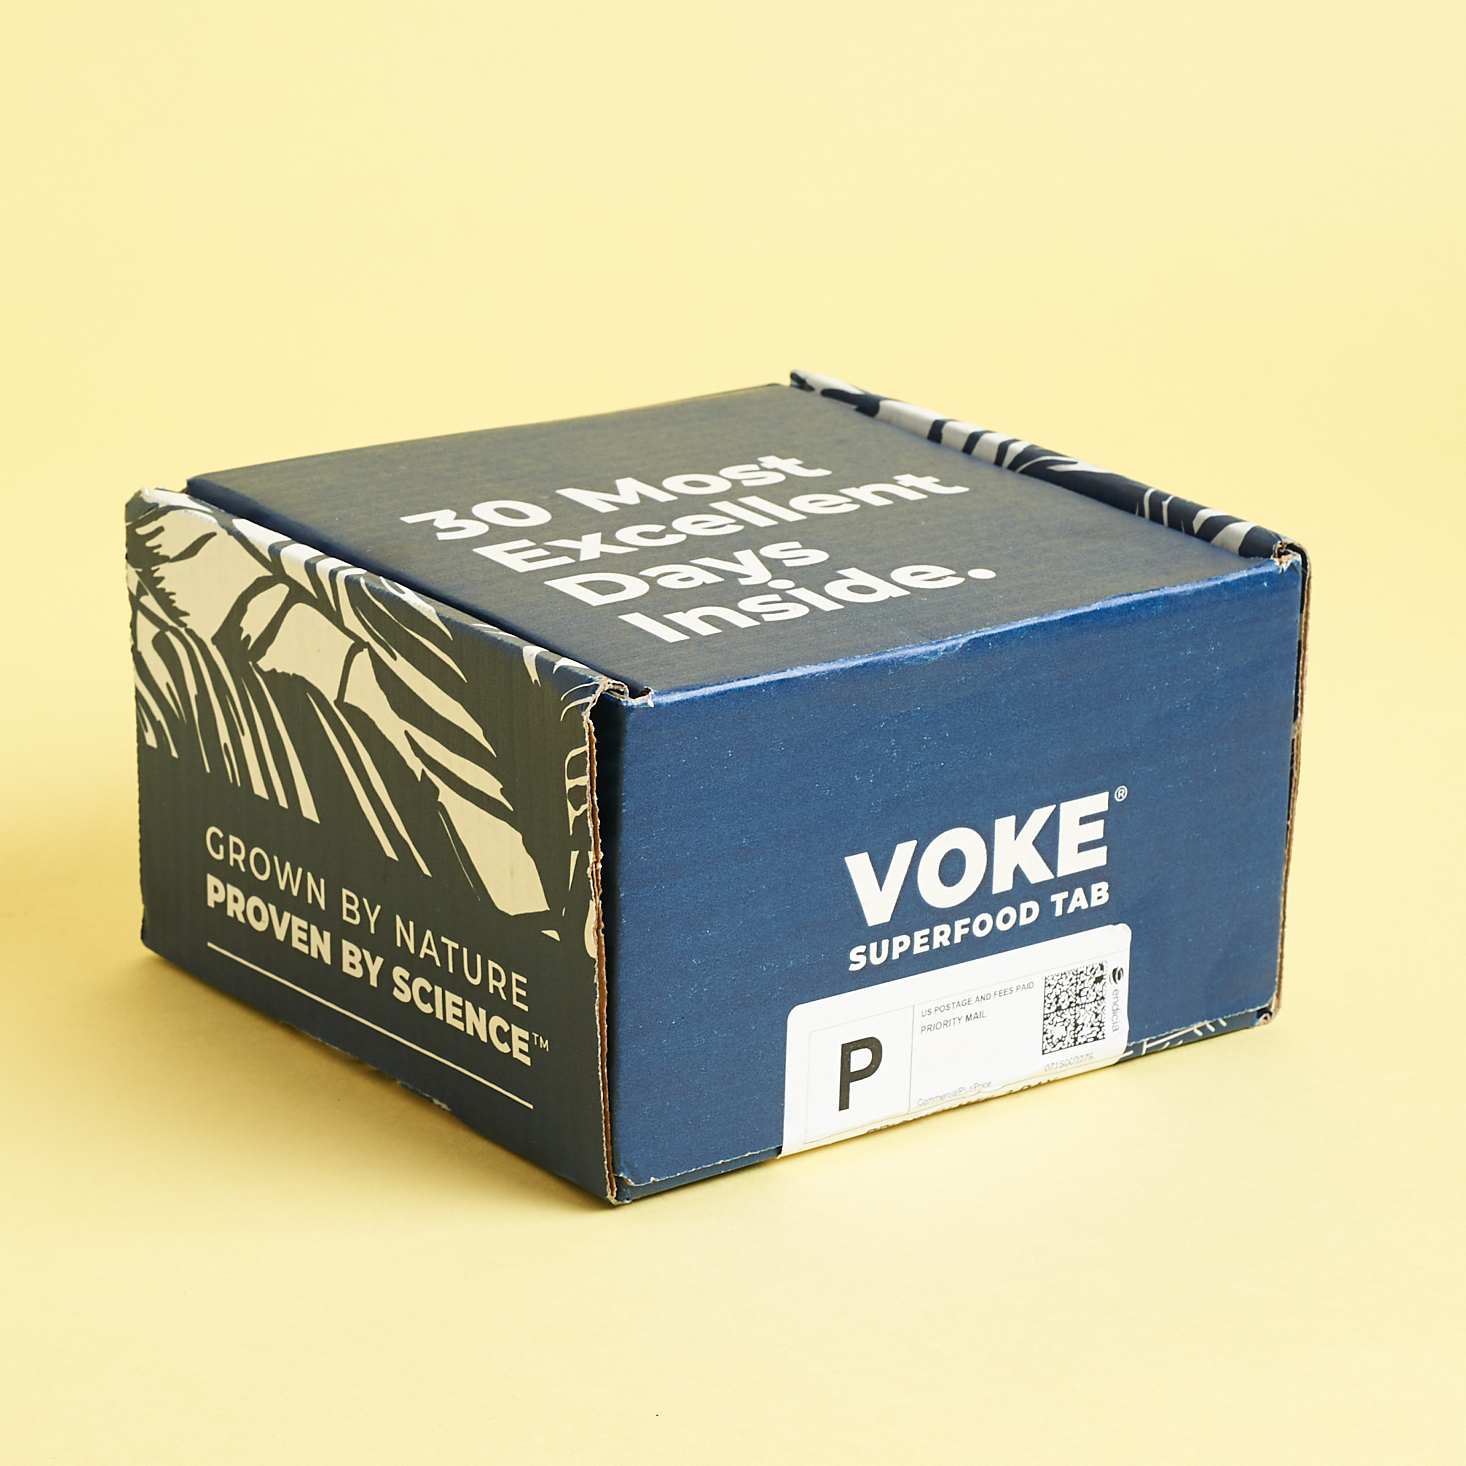 Voke box